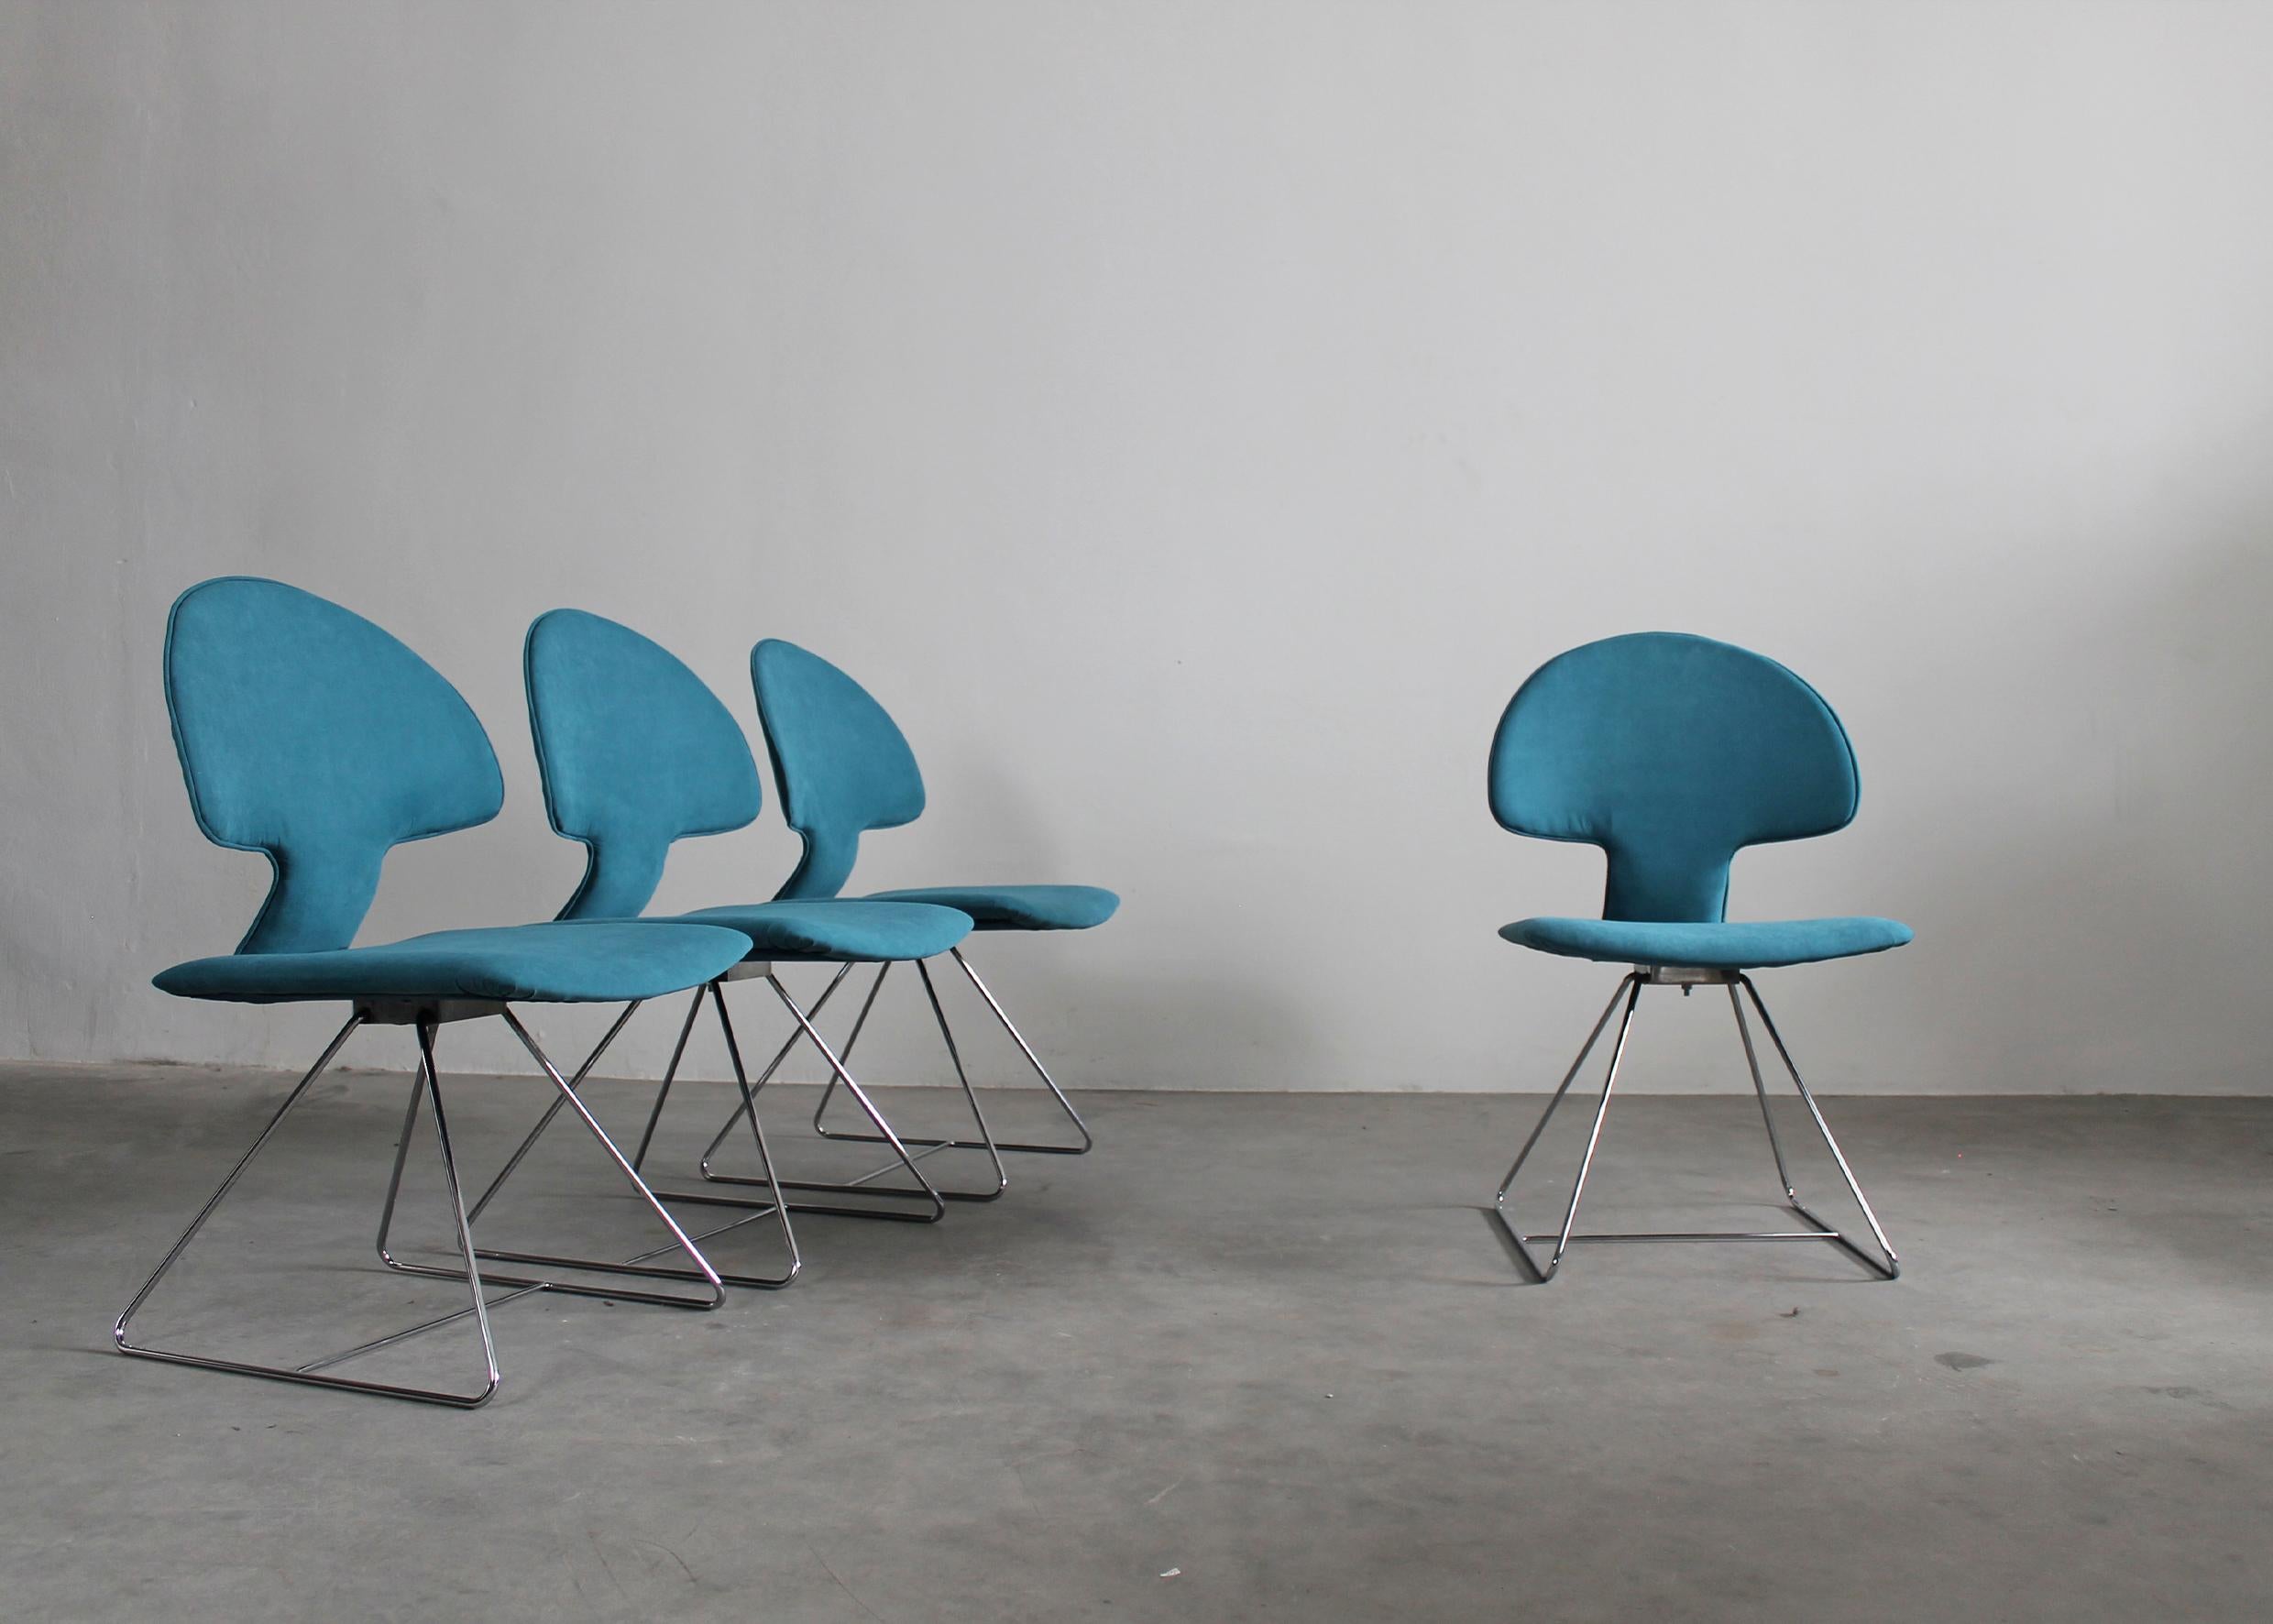 Ensemble de quatre chaises Longobarda avec pieds en métal chromé, assise et dossier garnis de tissu bleu.
La chaise Longobarda a été conçue par Vittorio Introini et fabriquée par Saporiti dans les années 1960. 

Vittorio Introini est un designer